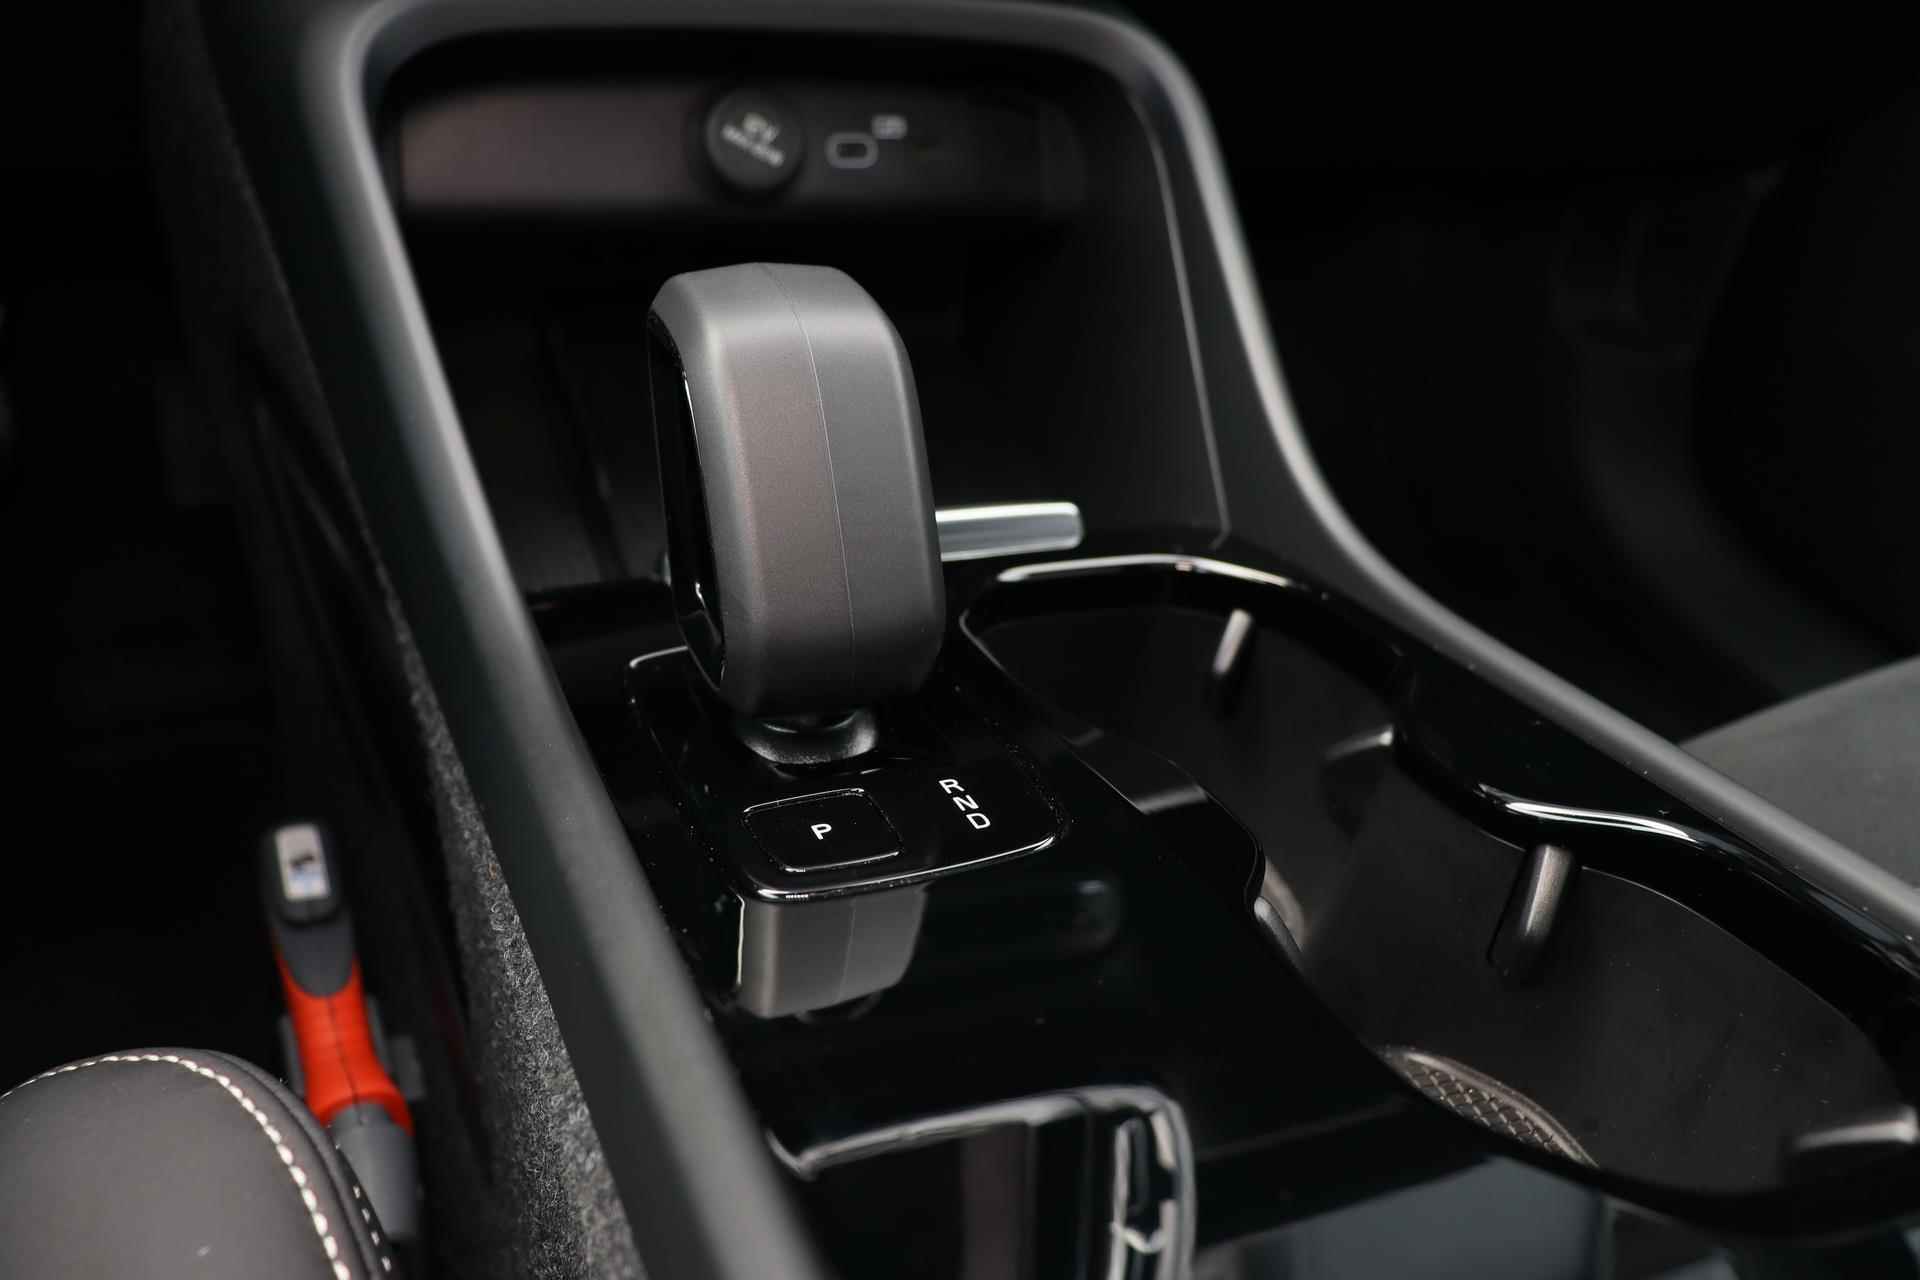 Volvo C40 Recharge Ultimate 69 kWh - Panoramadak - IntelliSafe Assist & Surround - Harman/Kardon audio - Verwarmde voorstoelen & stuur - Parkeersensoren voor & achter - Elektr. bedienb. voorstoelen met links geheugen - Draadloze tel. lader - Warmtepomp - Extra getint glas - 20' LMV - 13/25